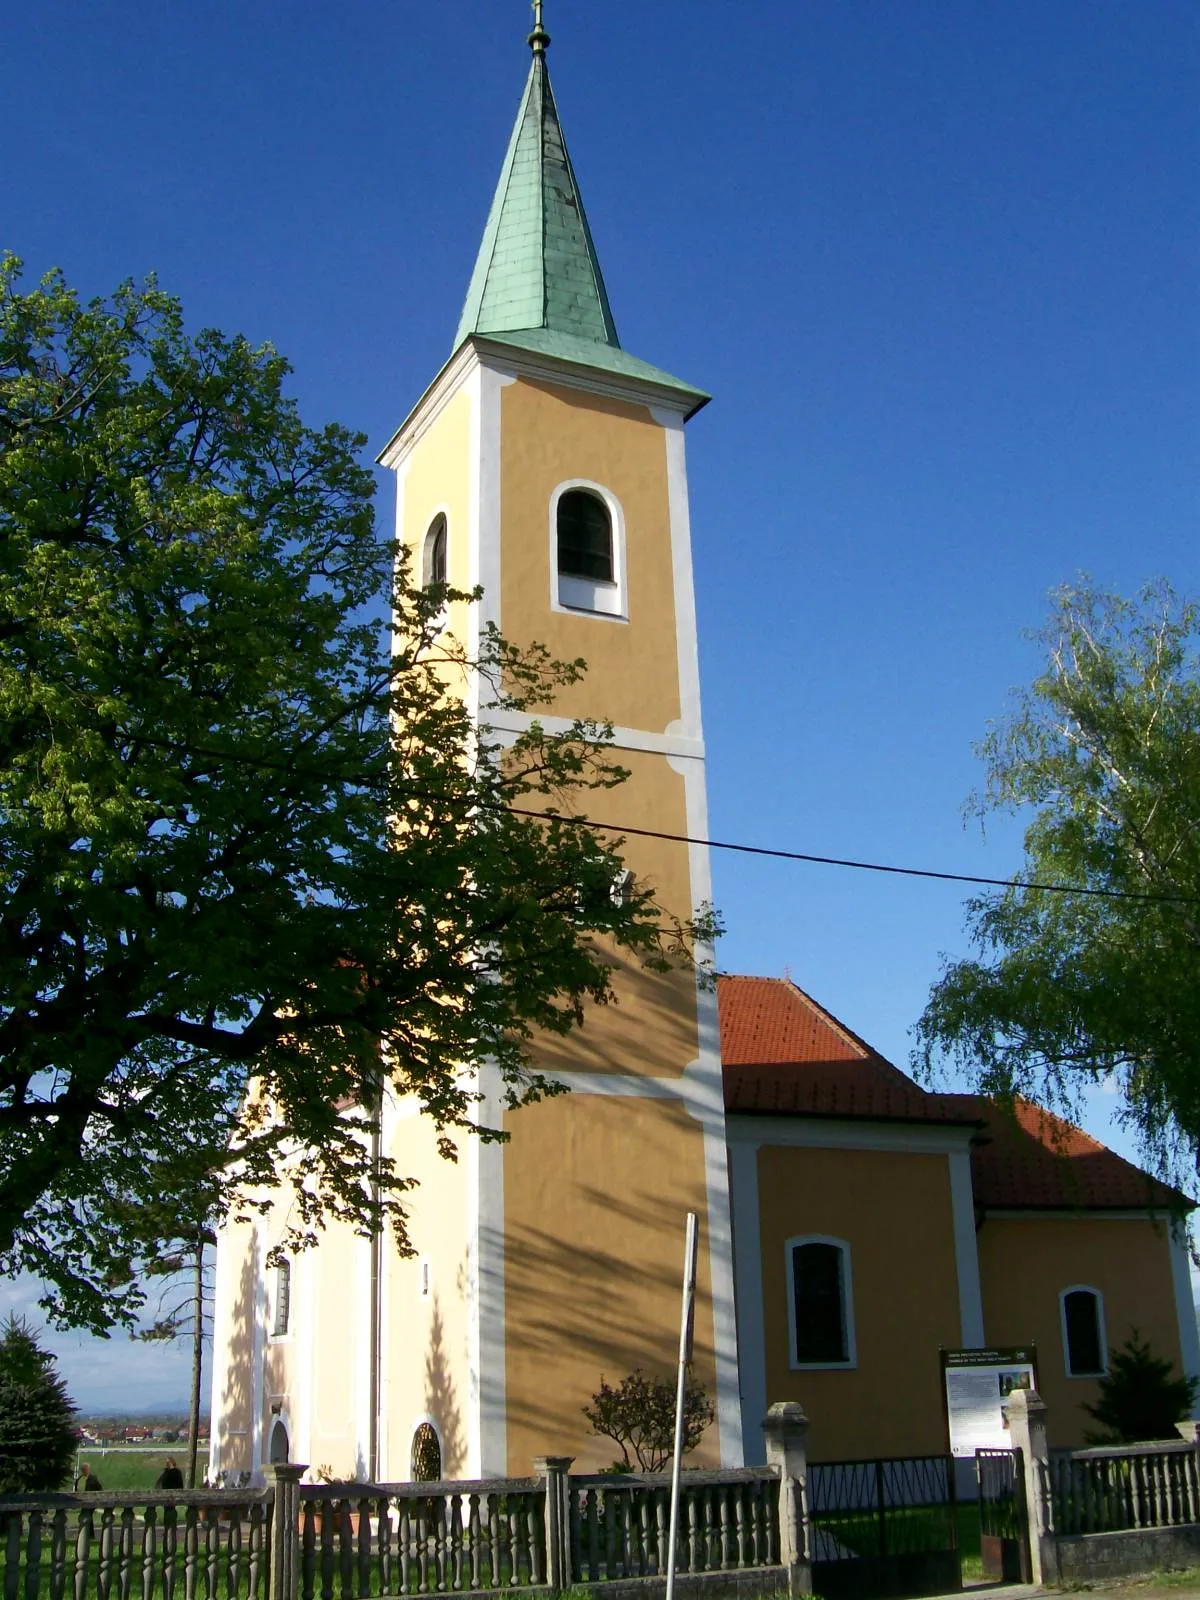 Image of Sjeverna Hrvatska